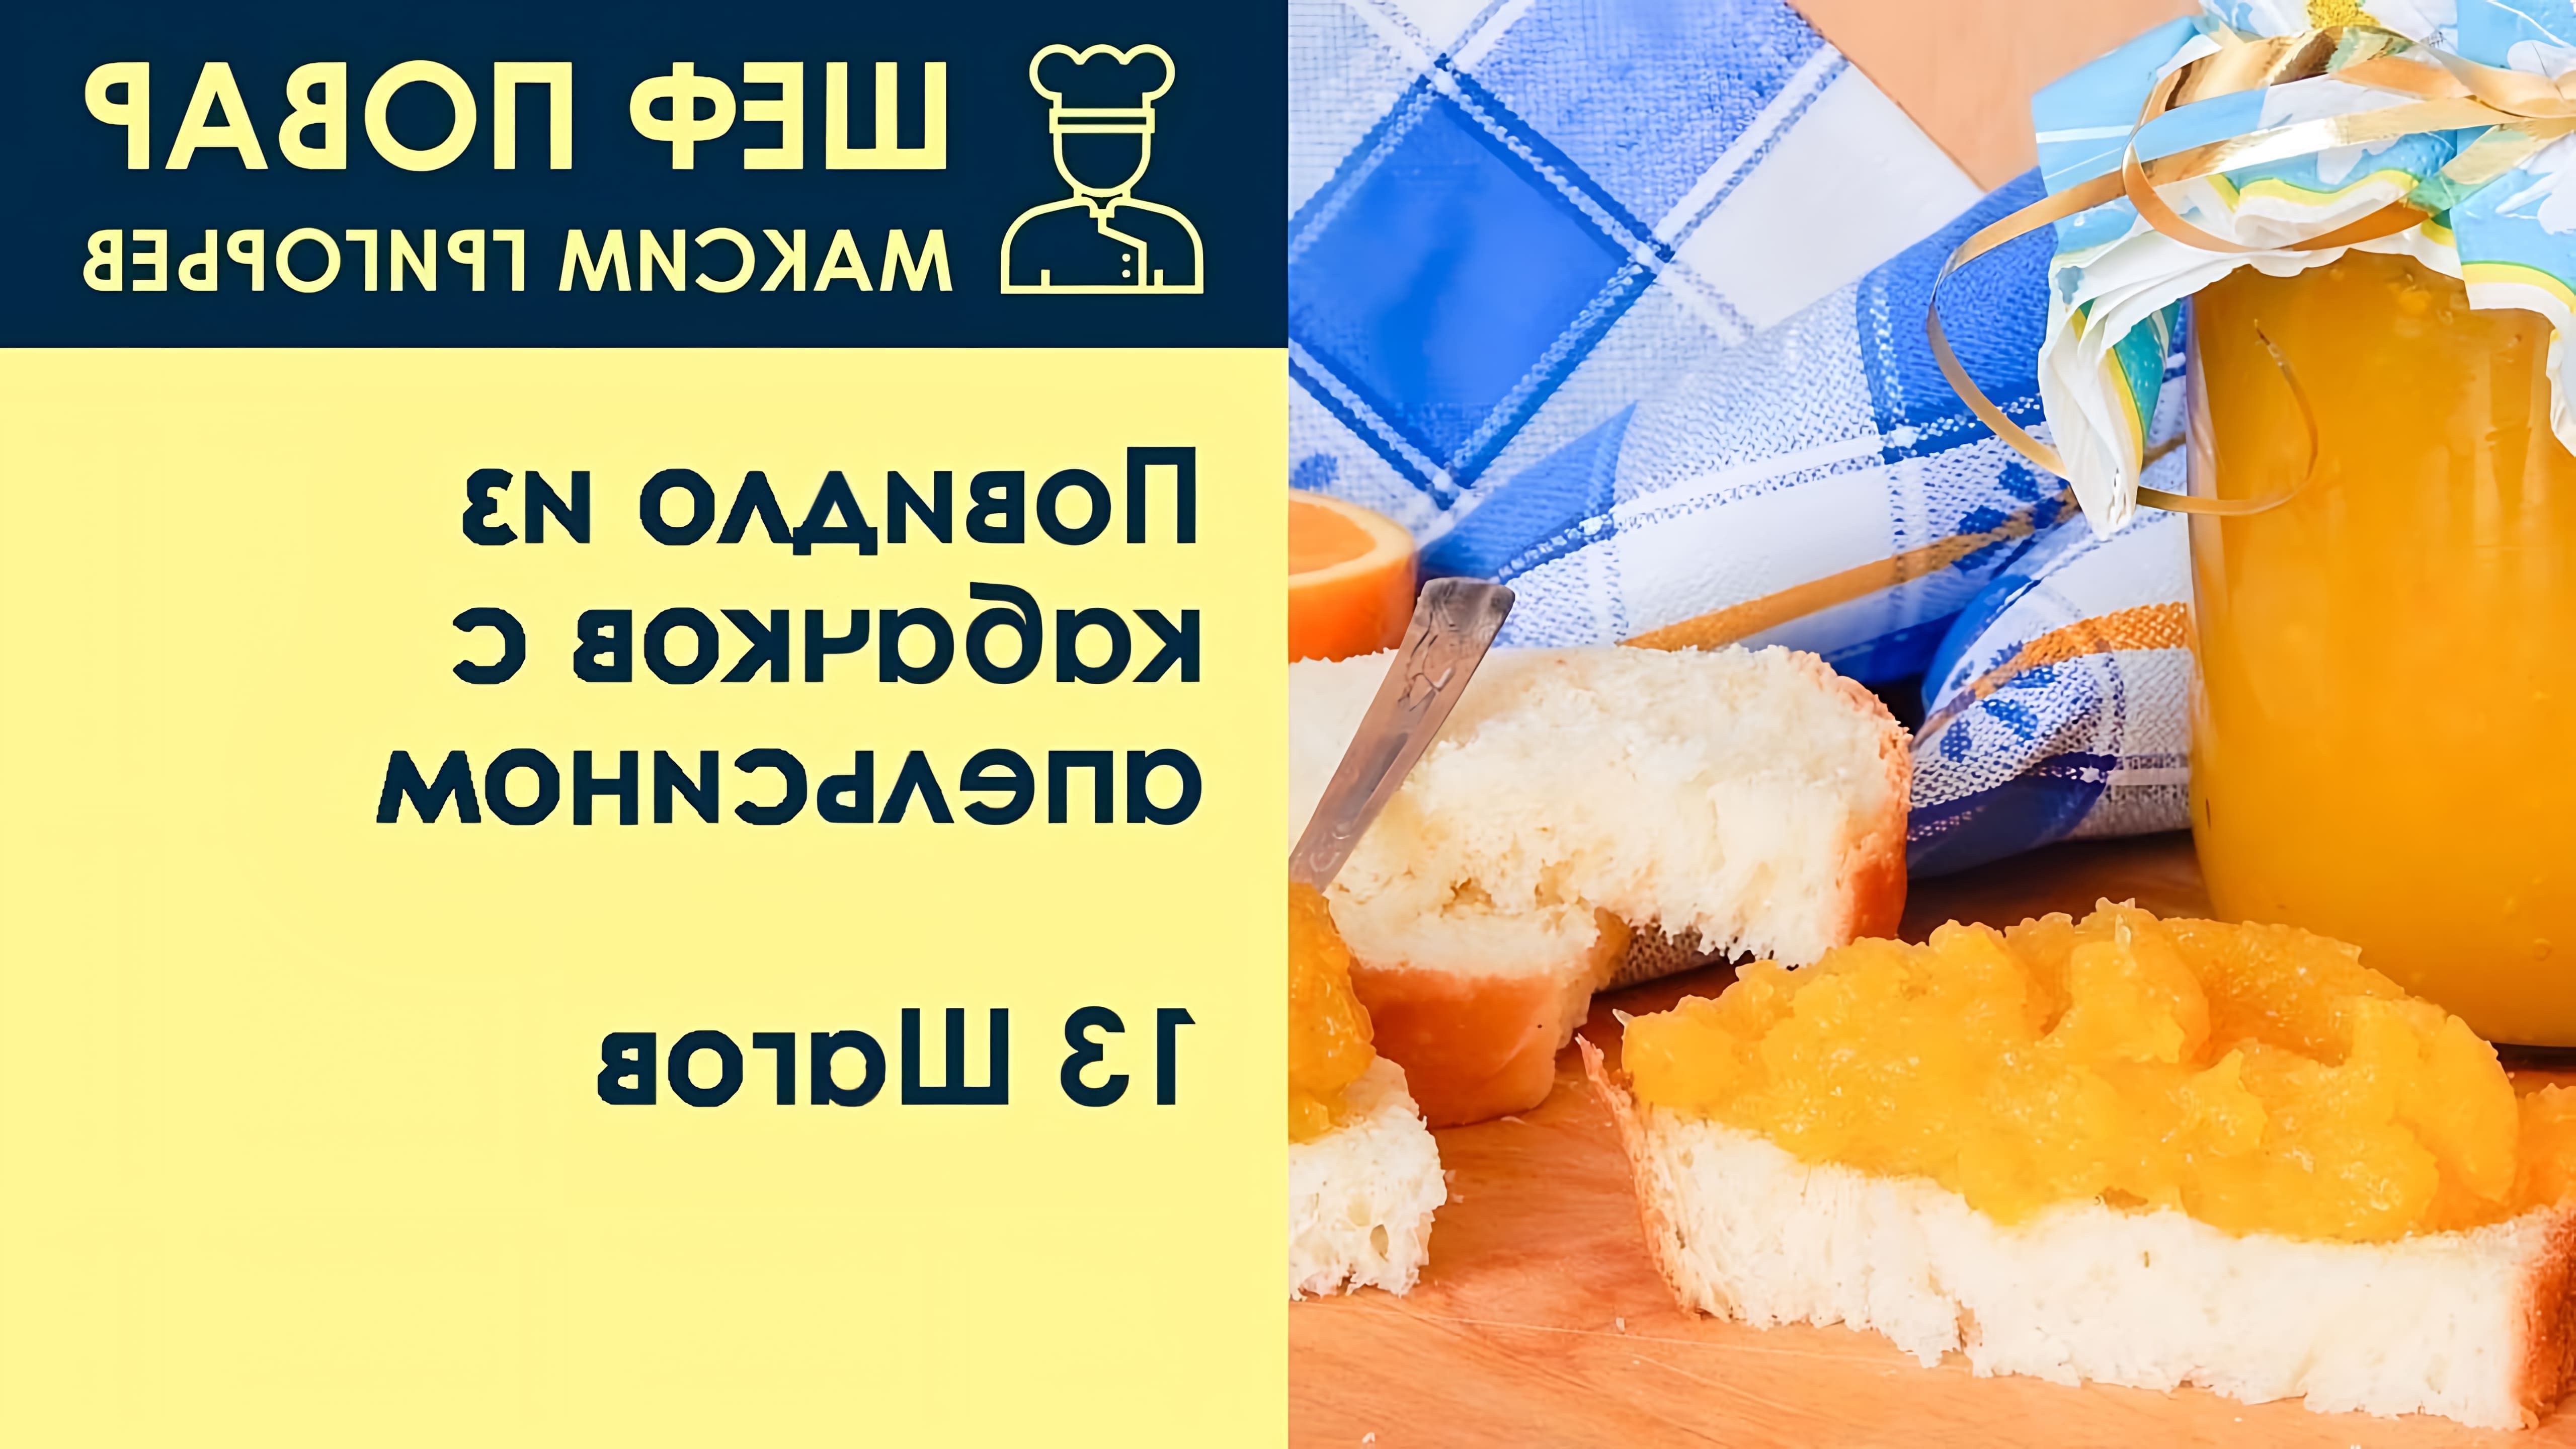 В этом видео шеф-повар Максим Григорьев делится рецептом приготовления повидла из кабачков с апельсином